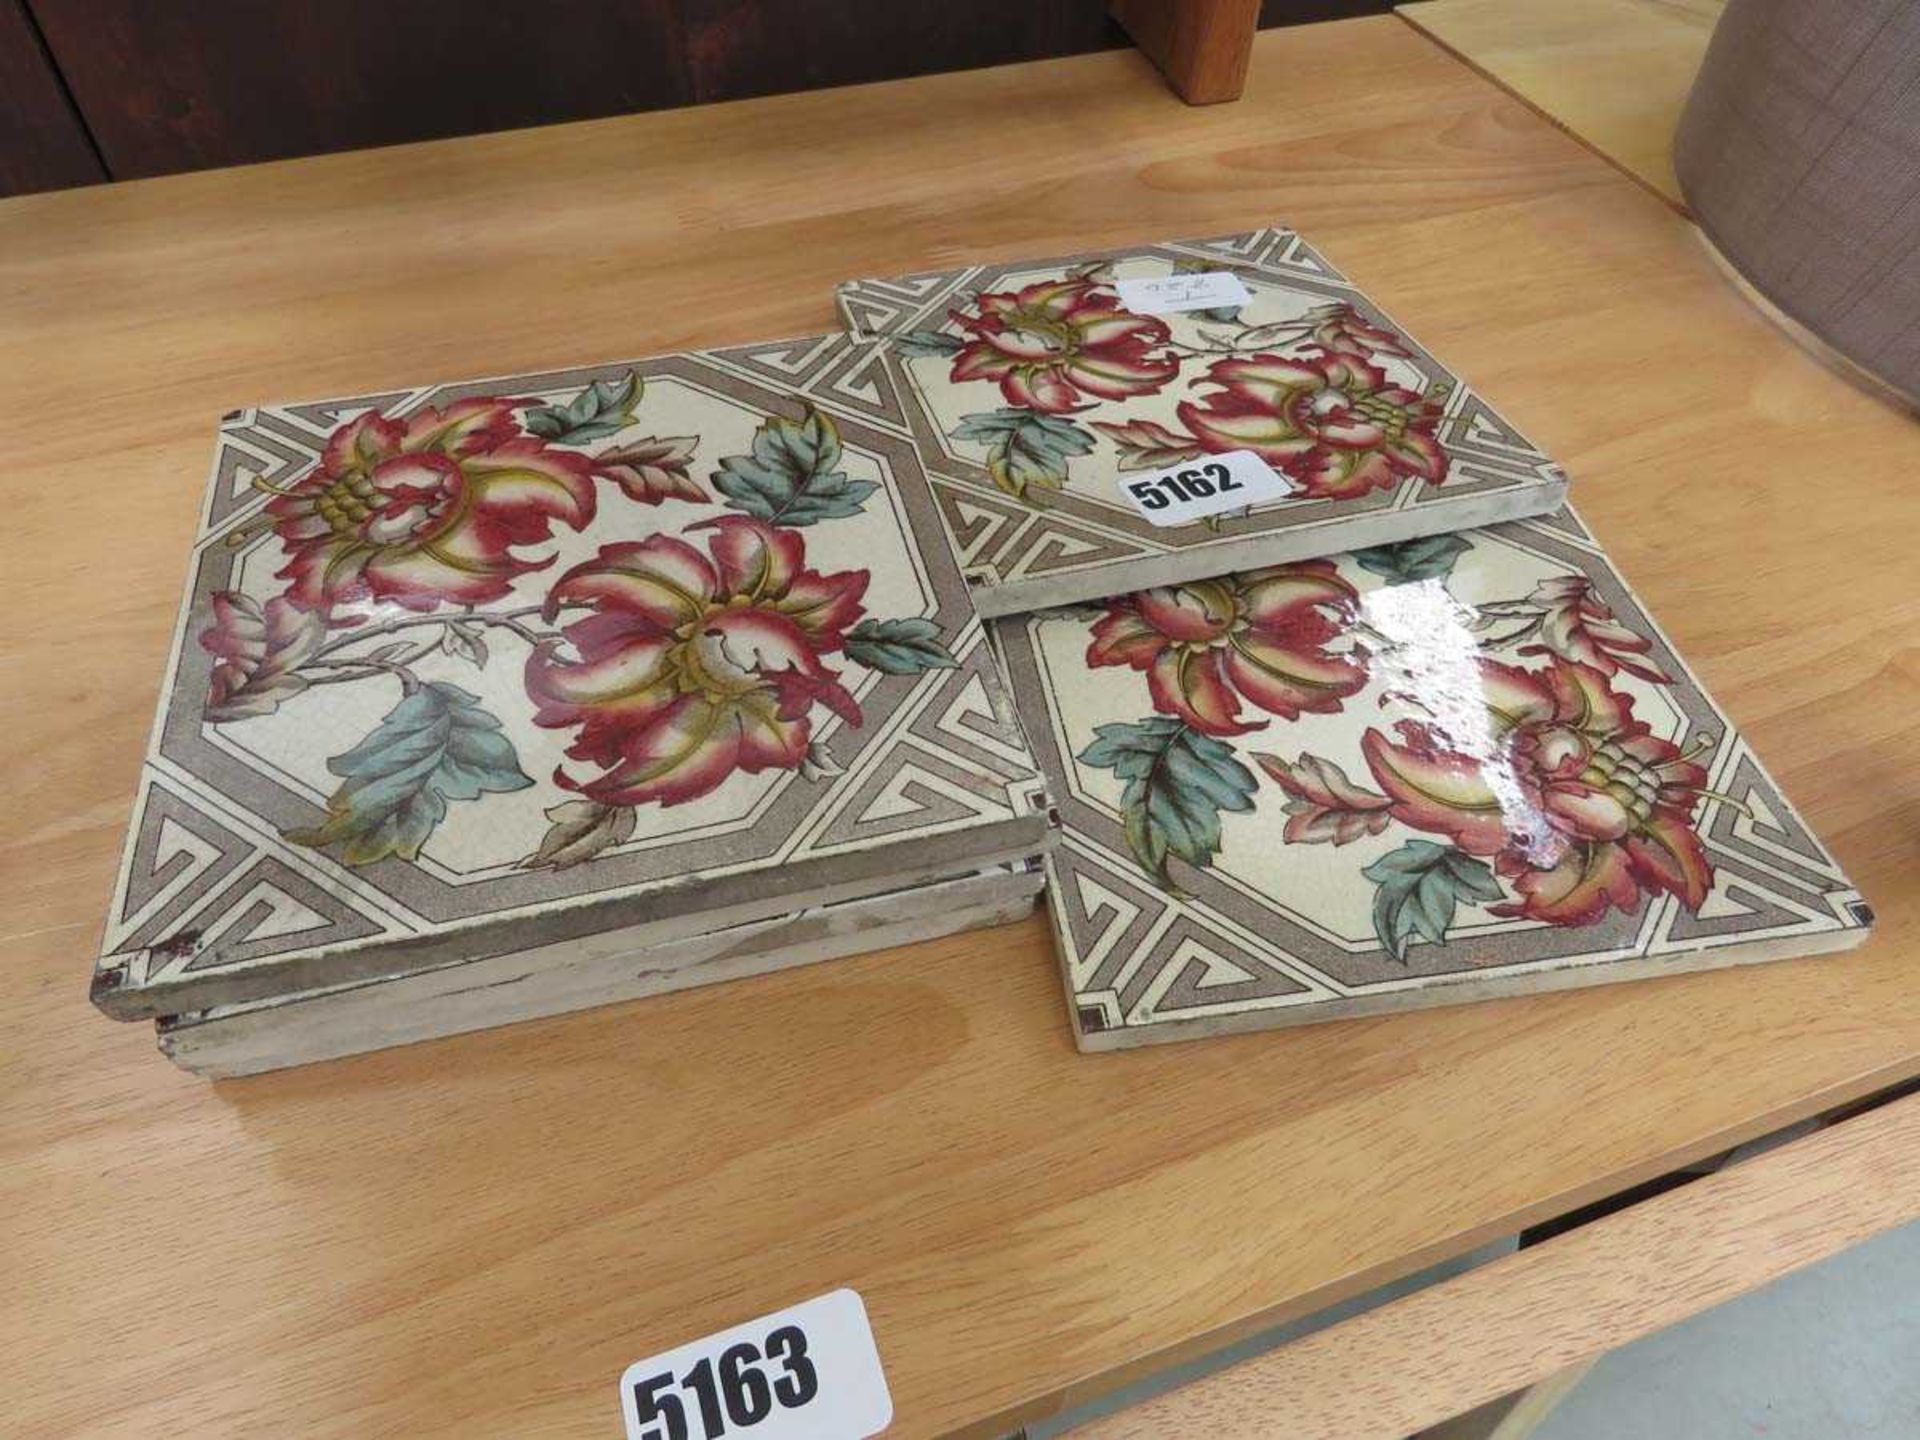 6 floral patterned tiles